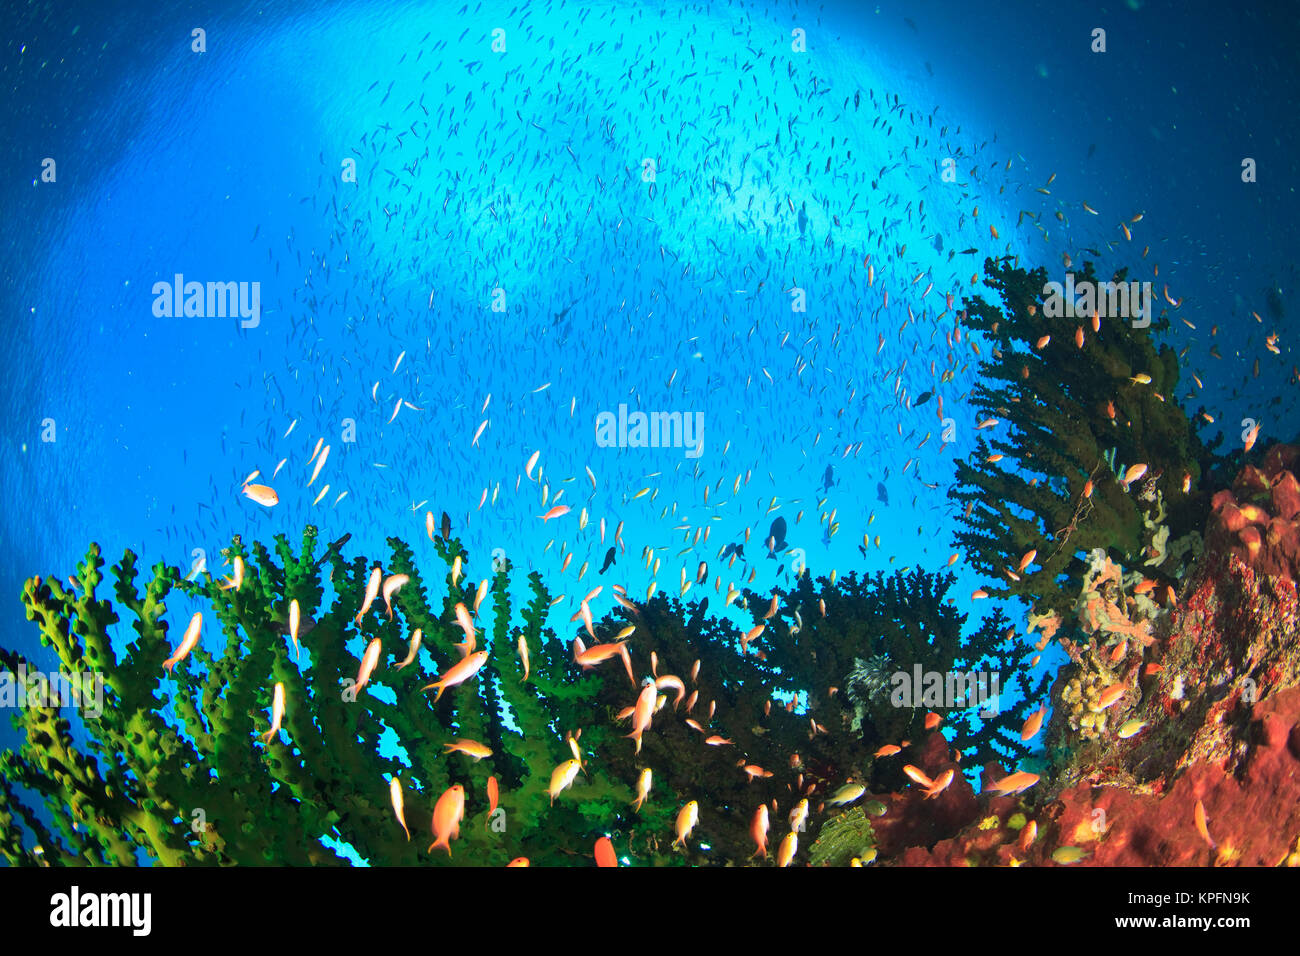 Schooling Anthias fish and Tubastrea hard coral, Kadola Island, Lucipara Group, Banda Sea, Indonesia Stock Photo